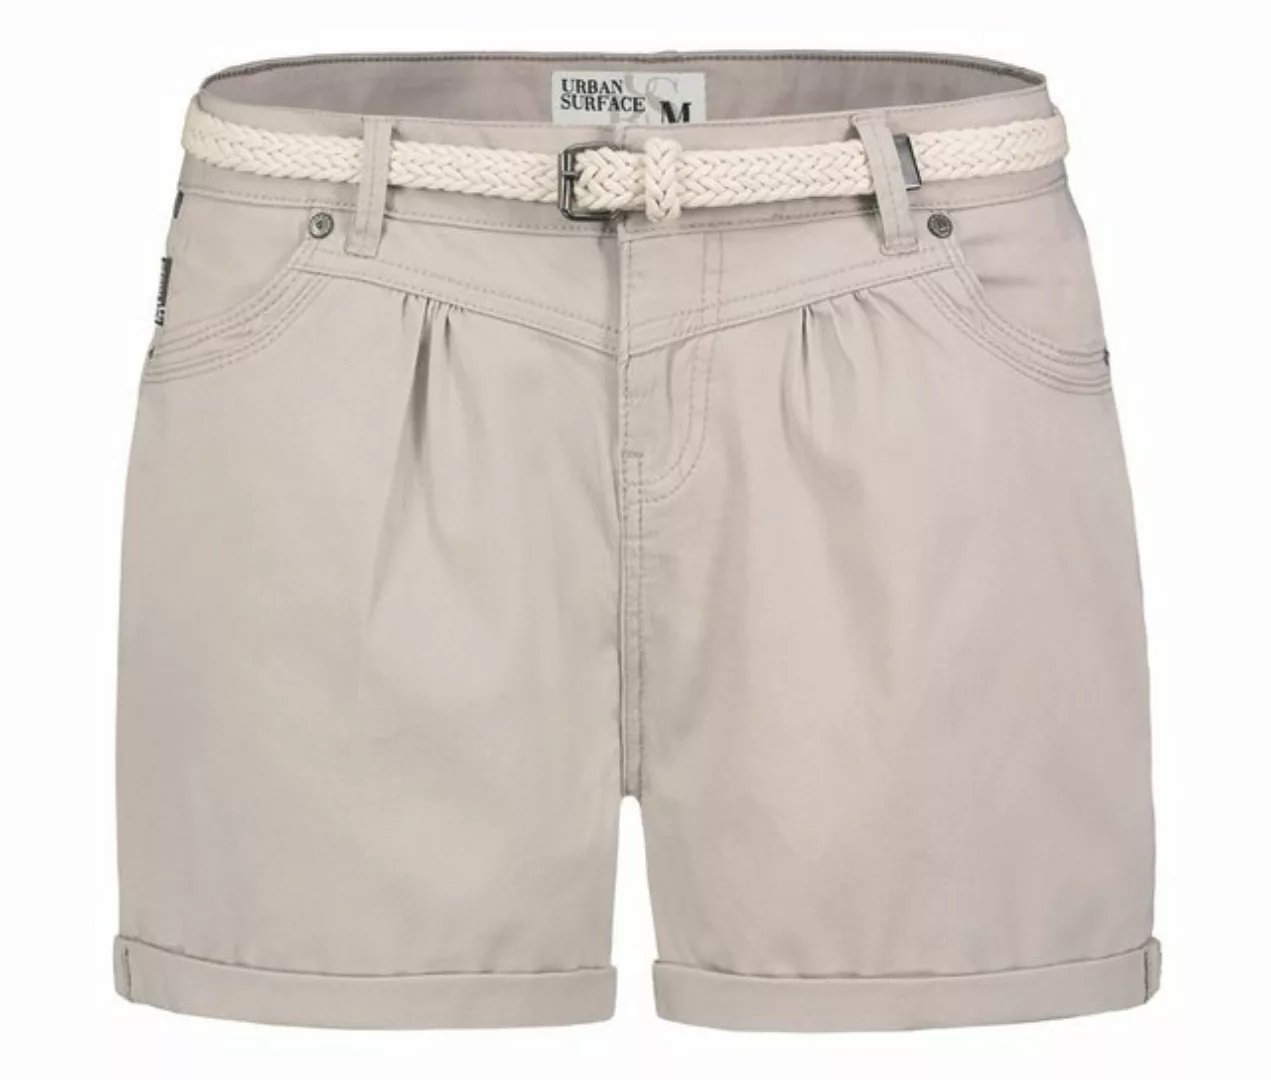 SUBLEVEL Shorts Damen Bermudas kurze Hose Baumwolle Hotpants Chino Sommer H günstig online kaufen